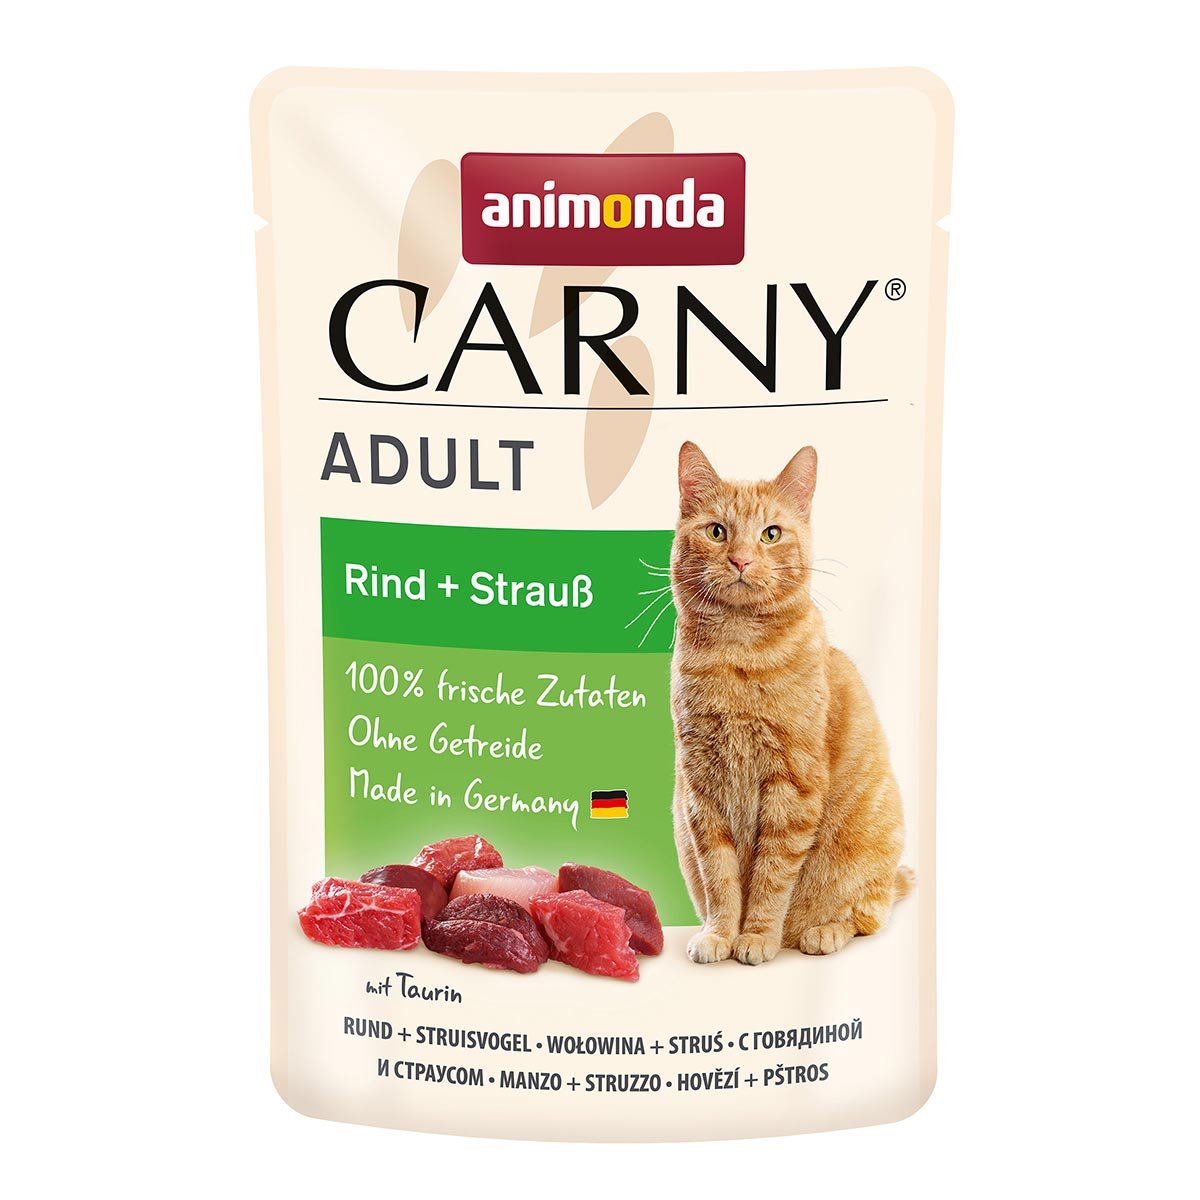 animonda Carny Adult Rind + Strauß 12x85g